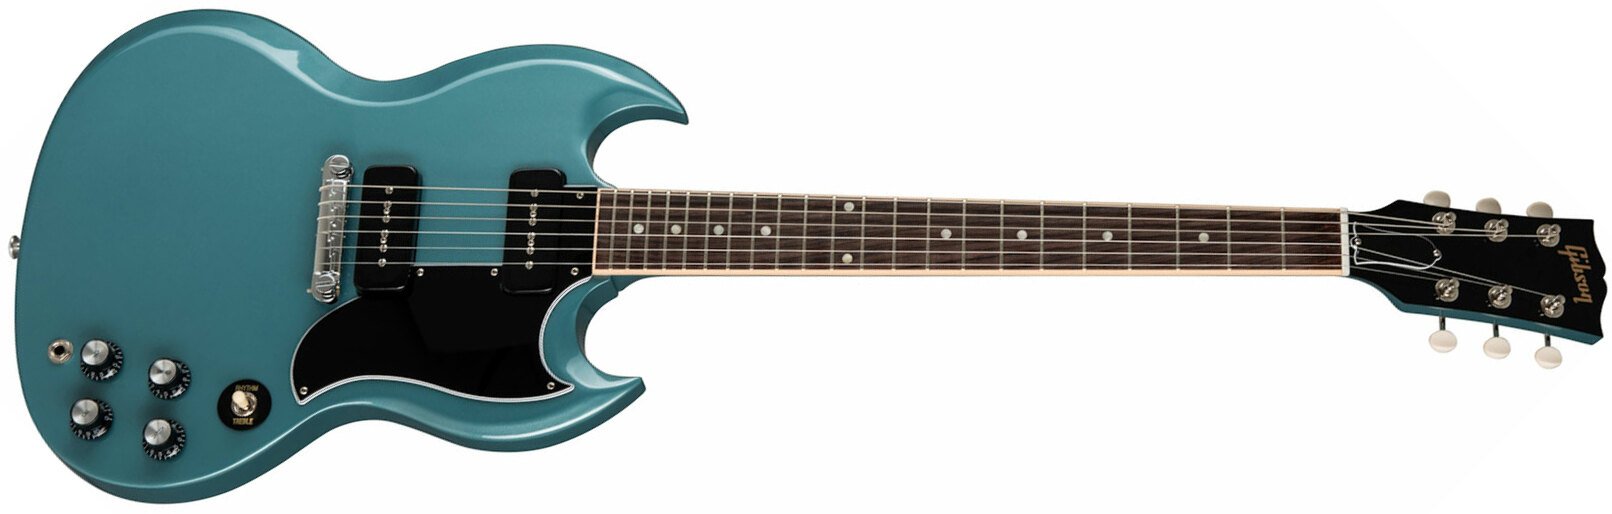 Gibson Sg Special Original P90 - Pelham Blue - Guitarra electrica retro rock - Main picture